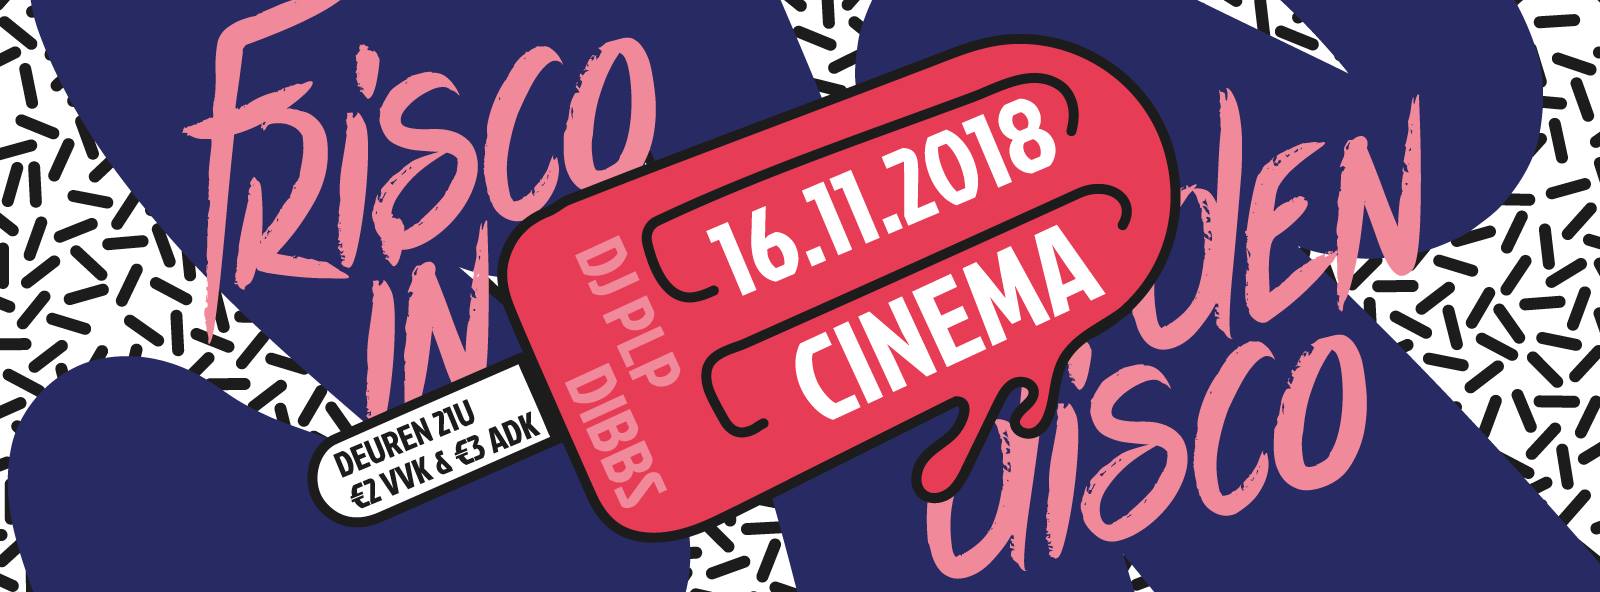 18 11 16 Frisco in den discoCinema Vrijdag 16 november 2018